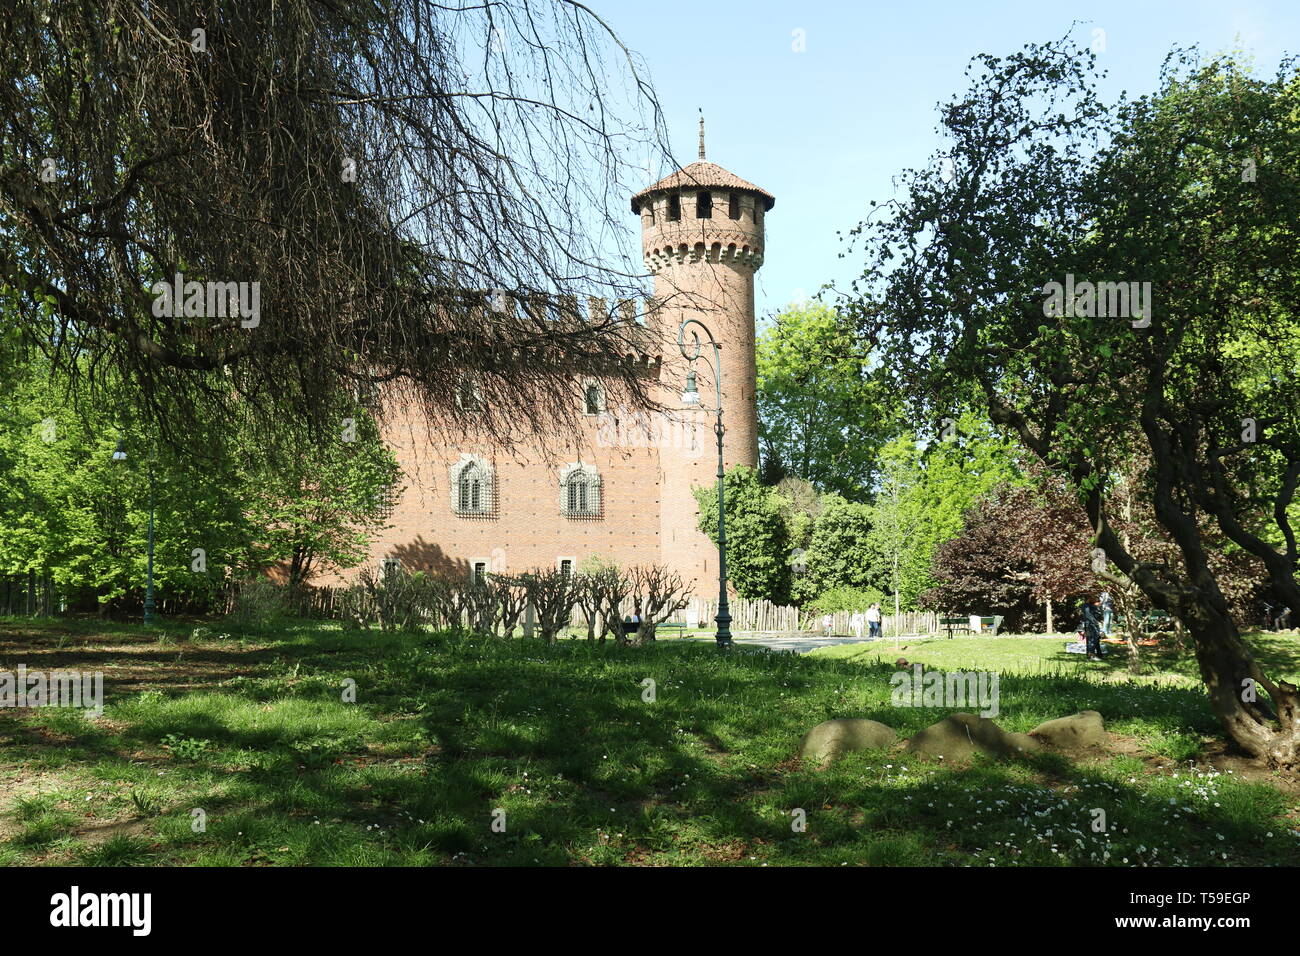 Un bellissimo luogo a Torino, Italia, è Valentino's Park con il suo newgothical borgo e castello e una ricchissima vegetazione lungo il fiume Po. Foto Stock